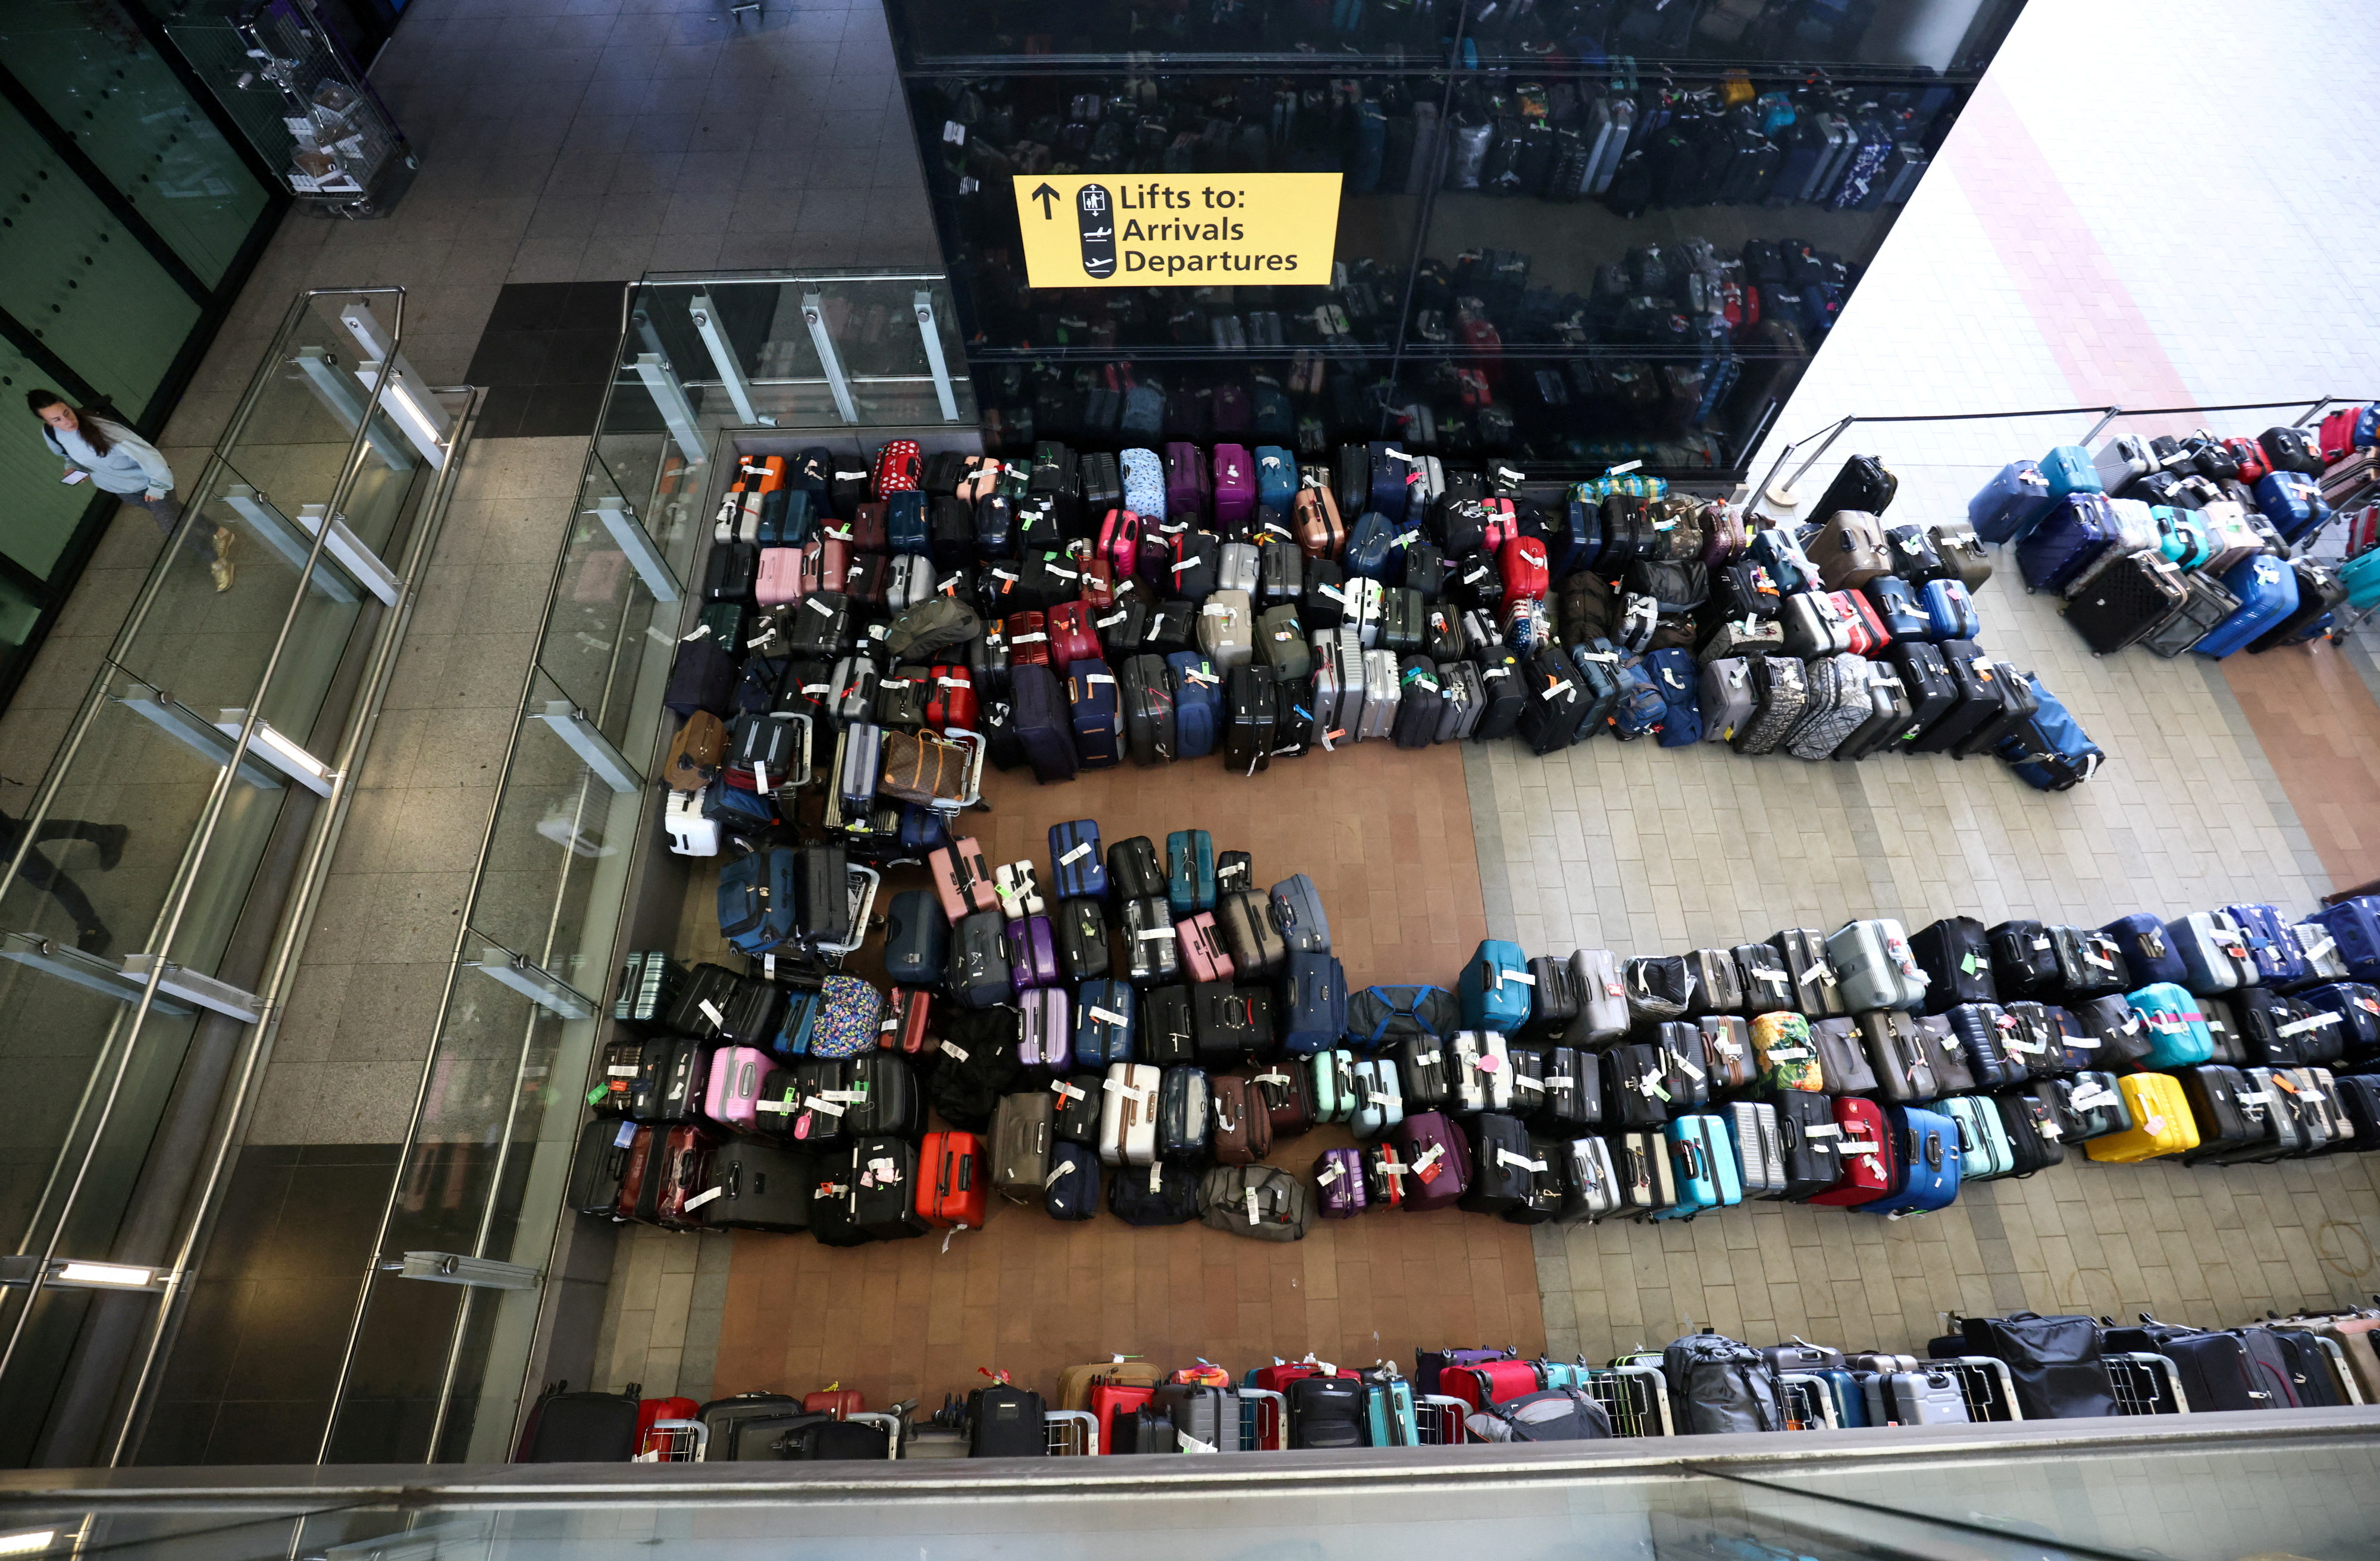 Las filas de equipaje de los pasajeros se encuentran afuera de la Terminal 2 del aeropuerto de Heathrow en Londres, Gran Bretaña, el 19 de junio de 2022. REUTERS/Henry Nicholls